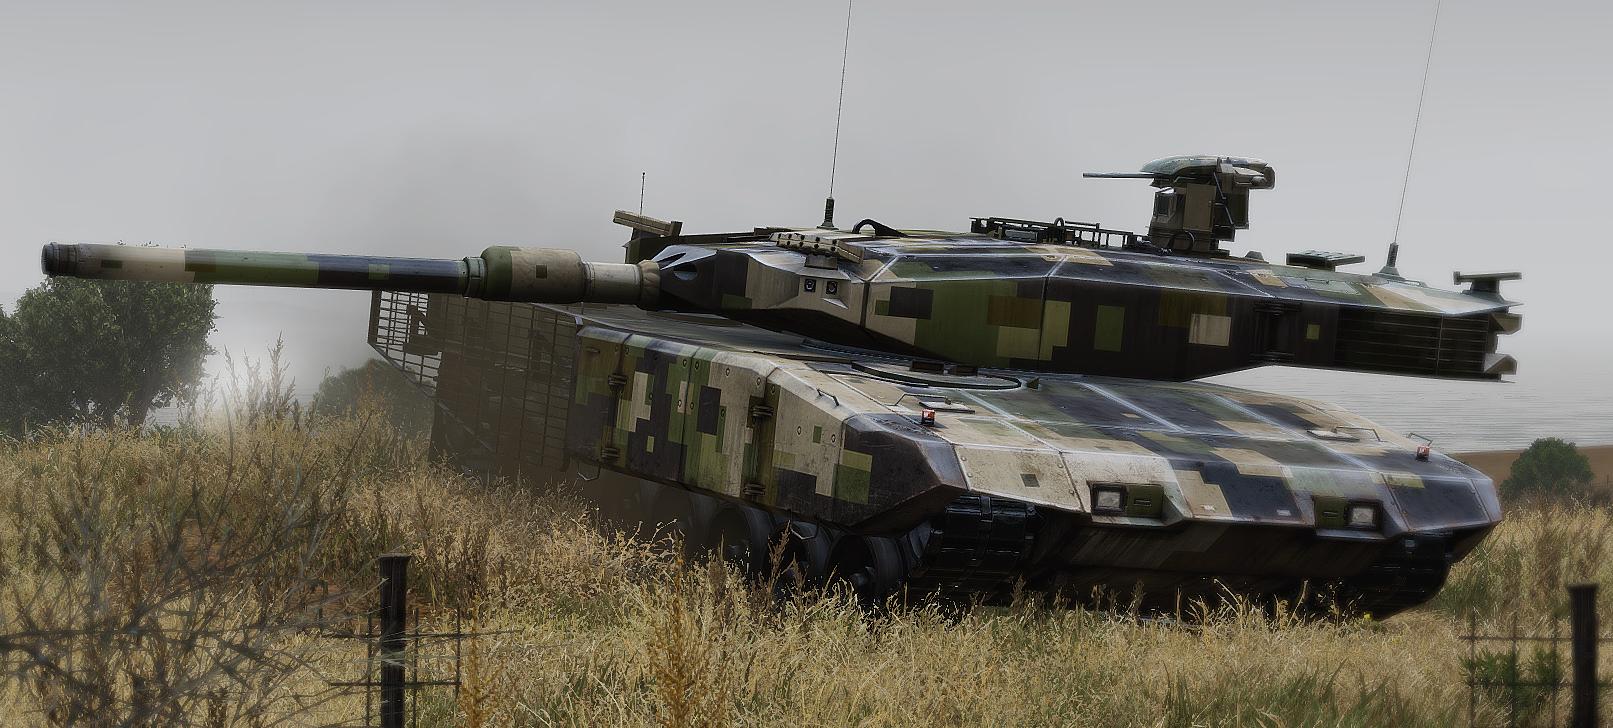 Арма танков. Arma 3 Tanks. Arma 3 танк. Т-140 Арма. Арма 3 Армата.